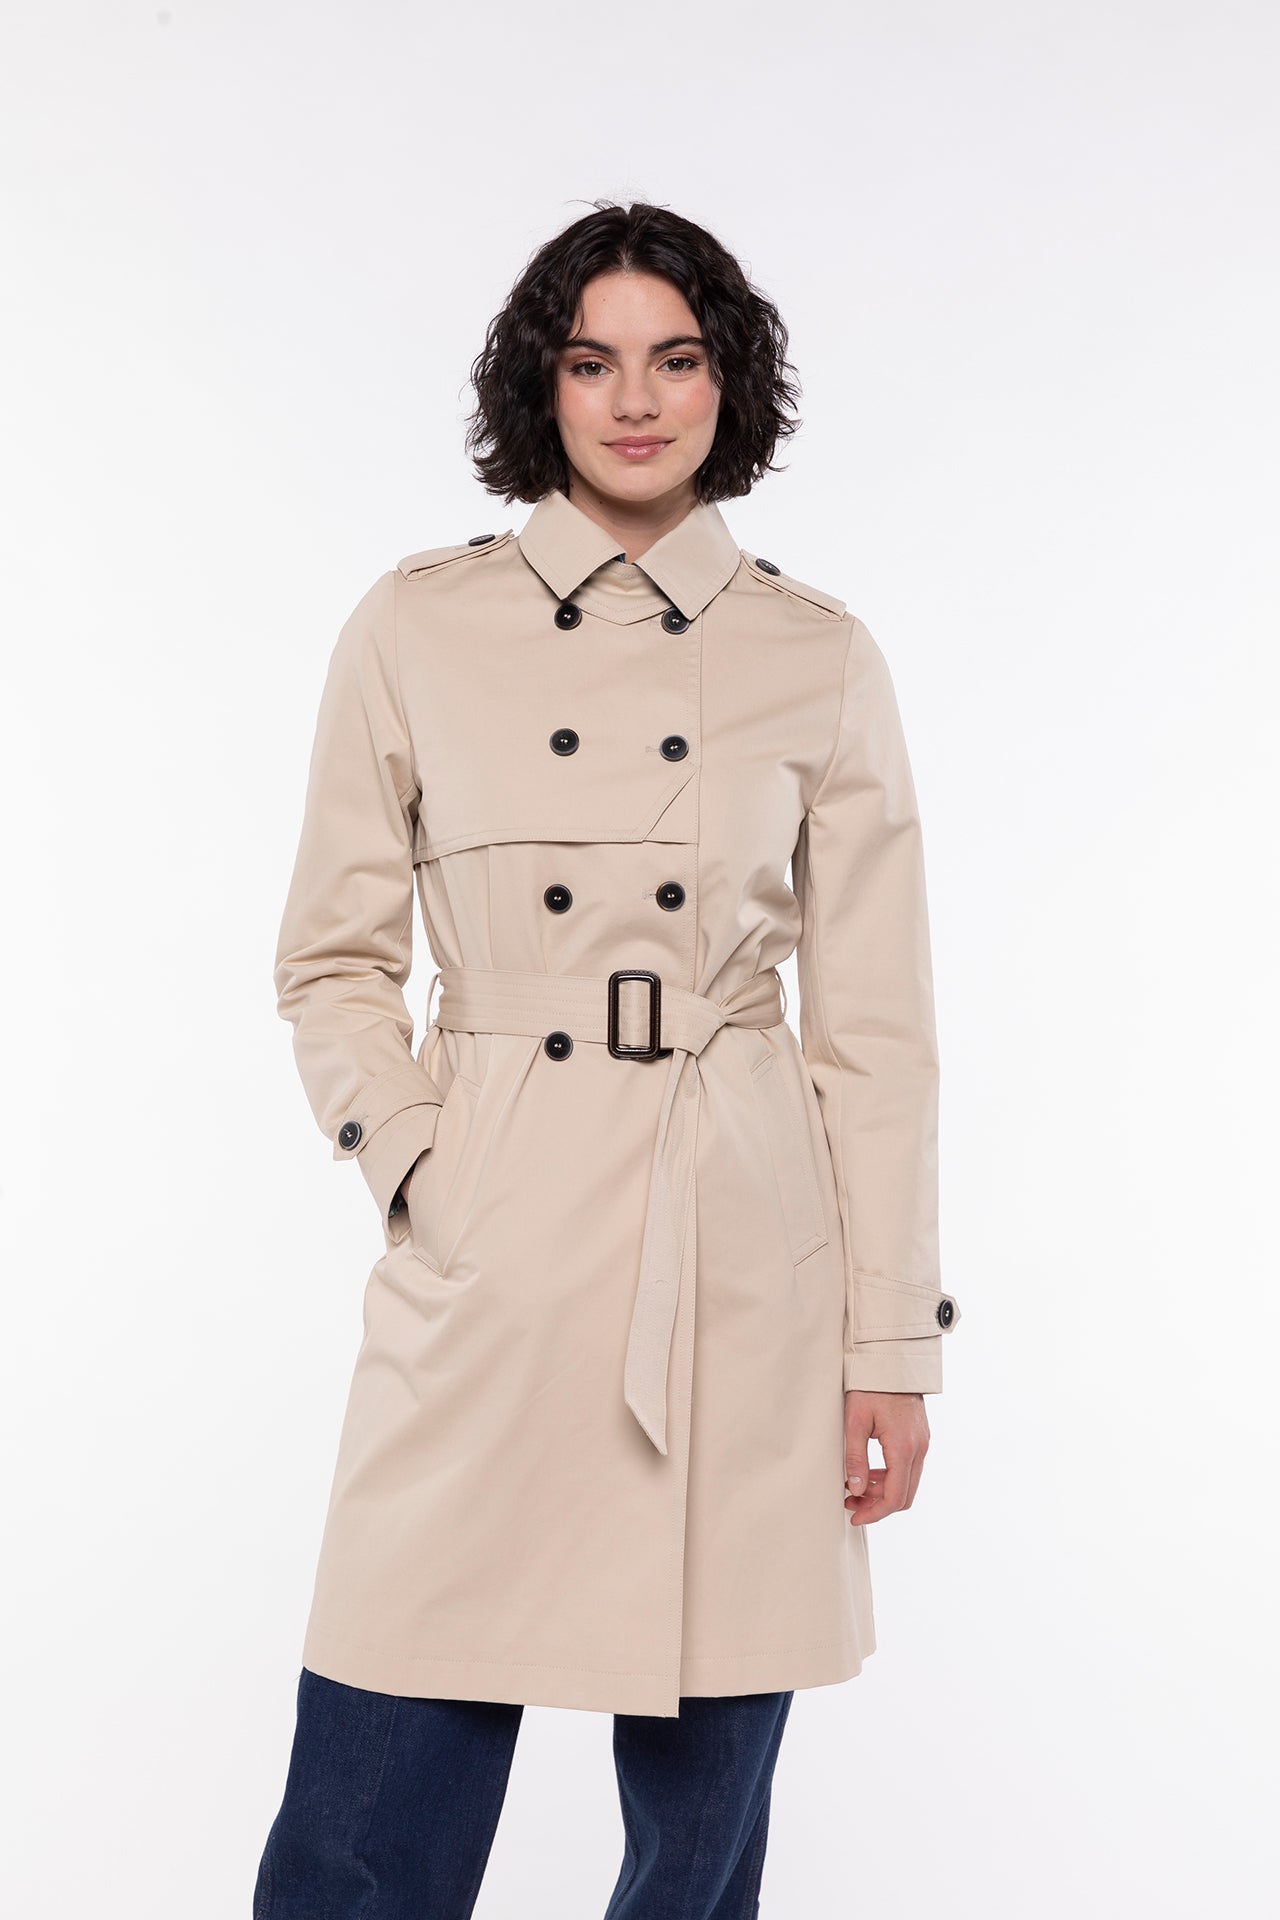 Trench pur coton beige ceinturé femme hiver - Trench & Coat